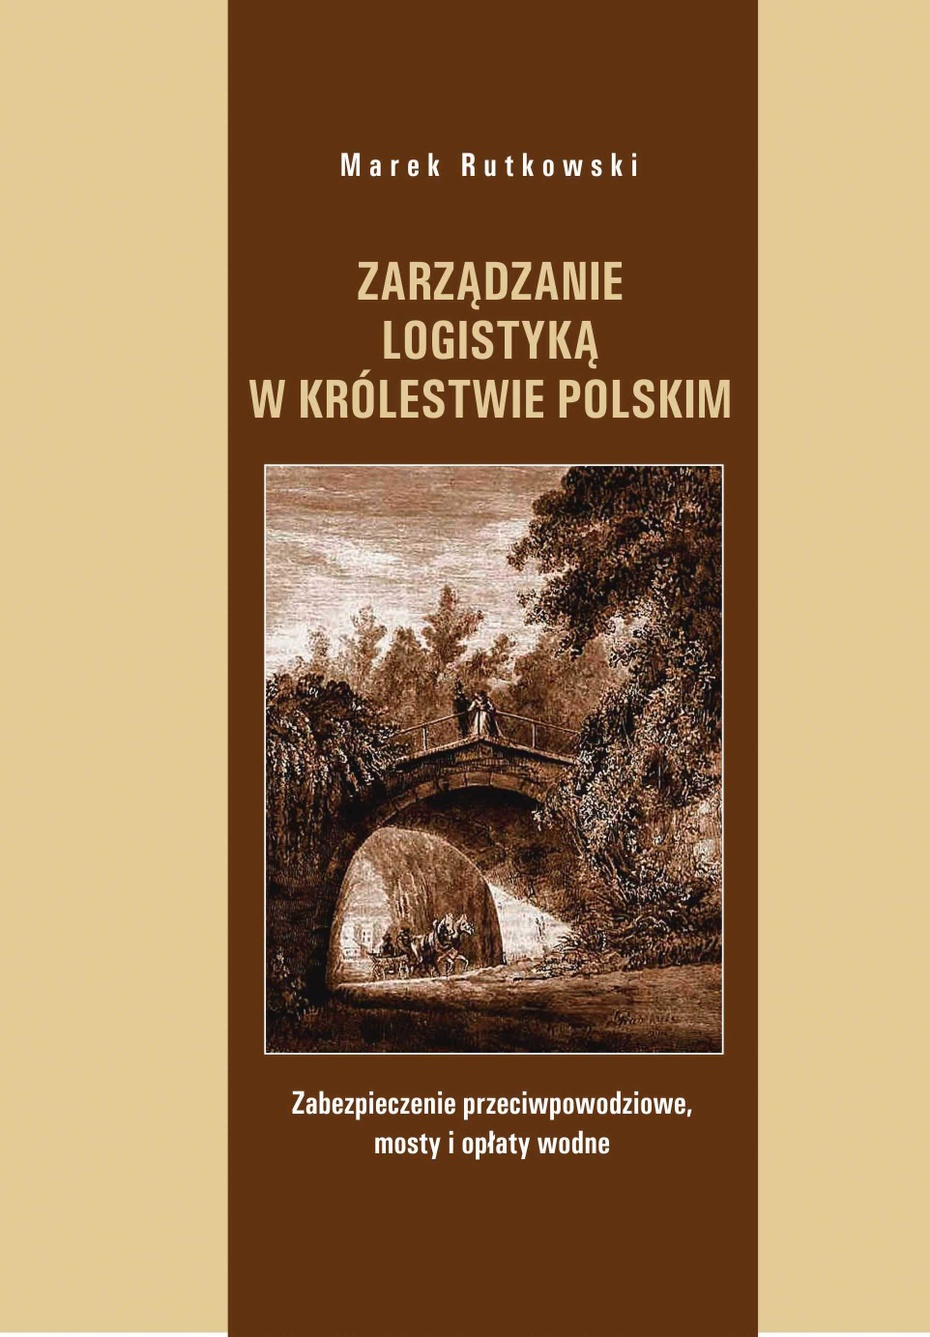 Zarządzanie logistyką w Królestwie Polskim. Zabezpieczenie przeciwpowodziowe, mosty i opłaty wodne. ISBN 978 - 83 - 62069 -88 -0